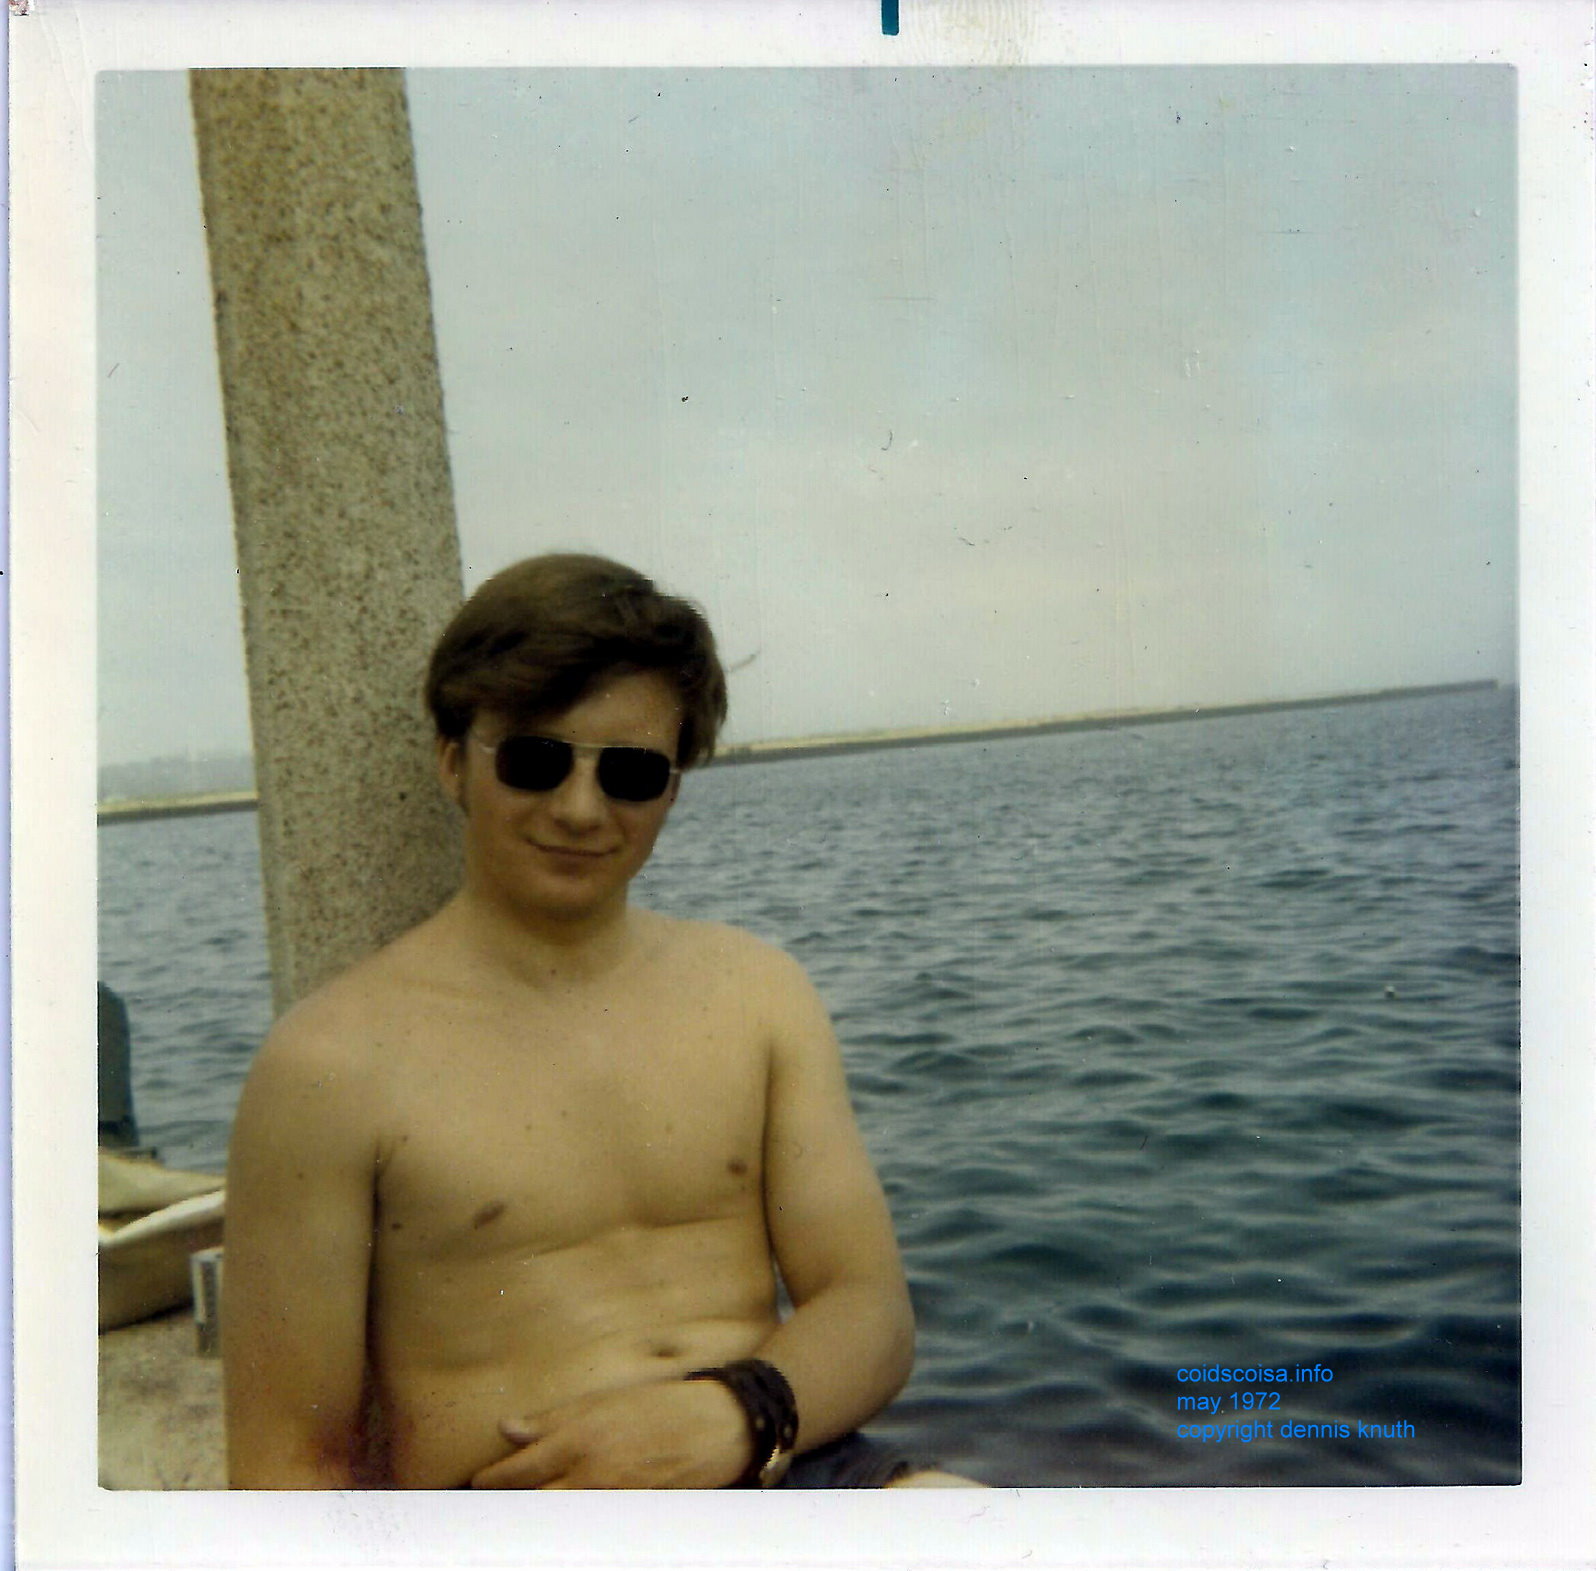 Dennis Knuth Shirtless on Lake Michigan